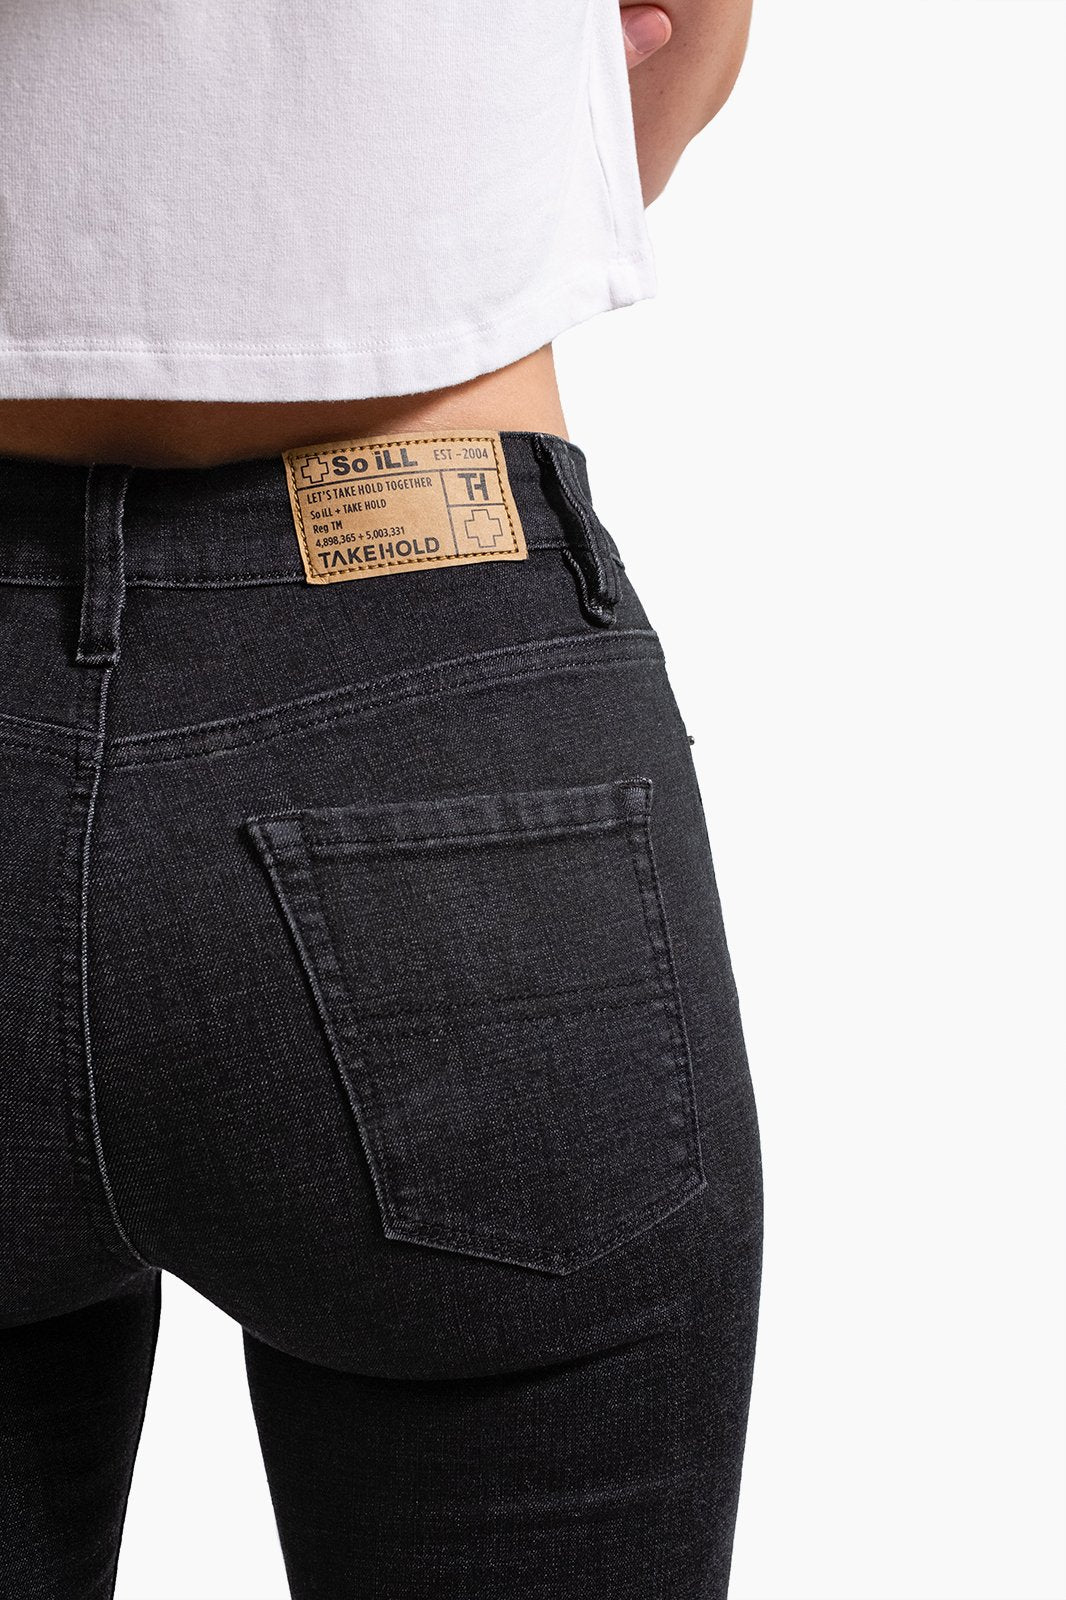 Buy Women's Black Jeans Online